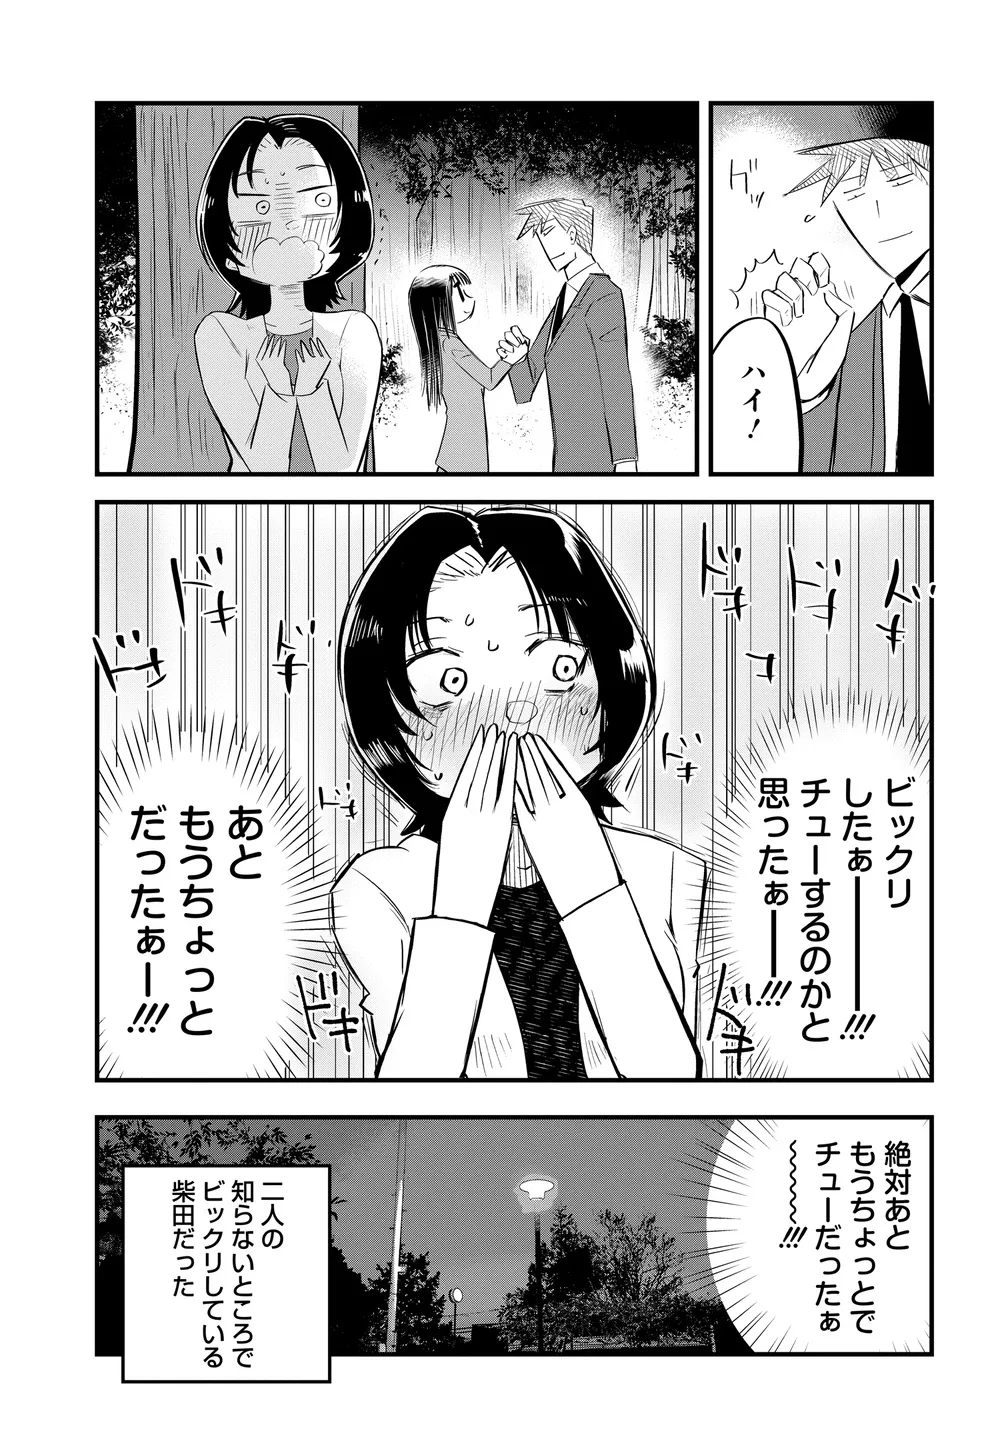 『美人すぎる女装刑事 藤堂さん』(23/39)